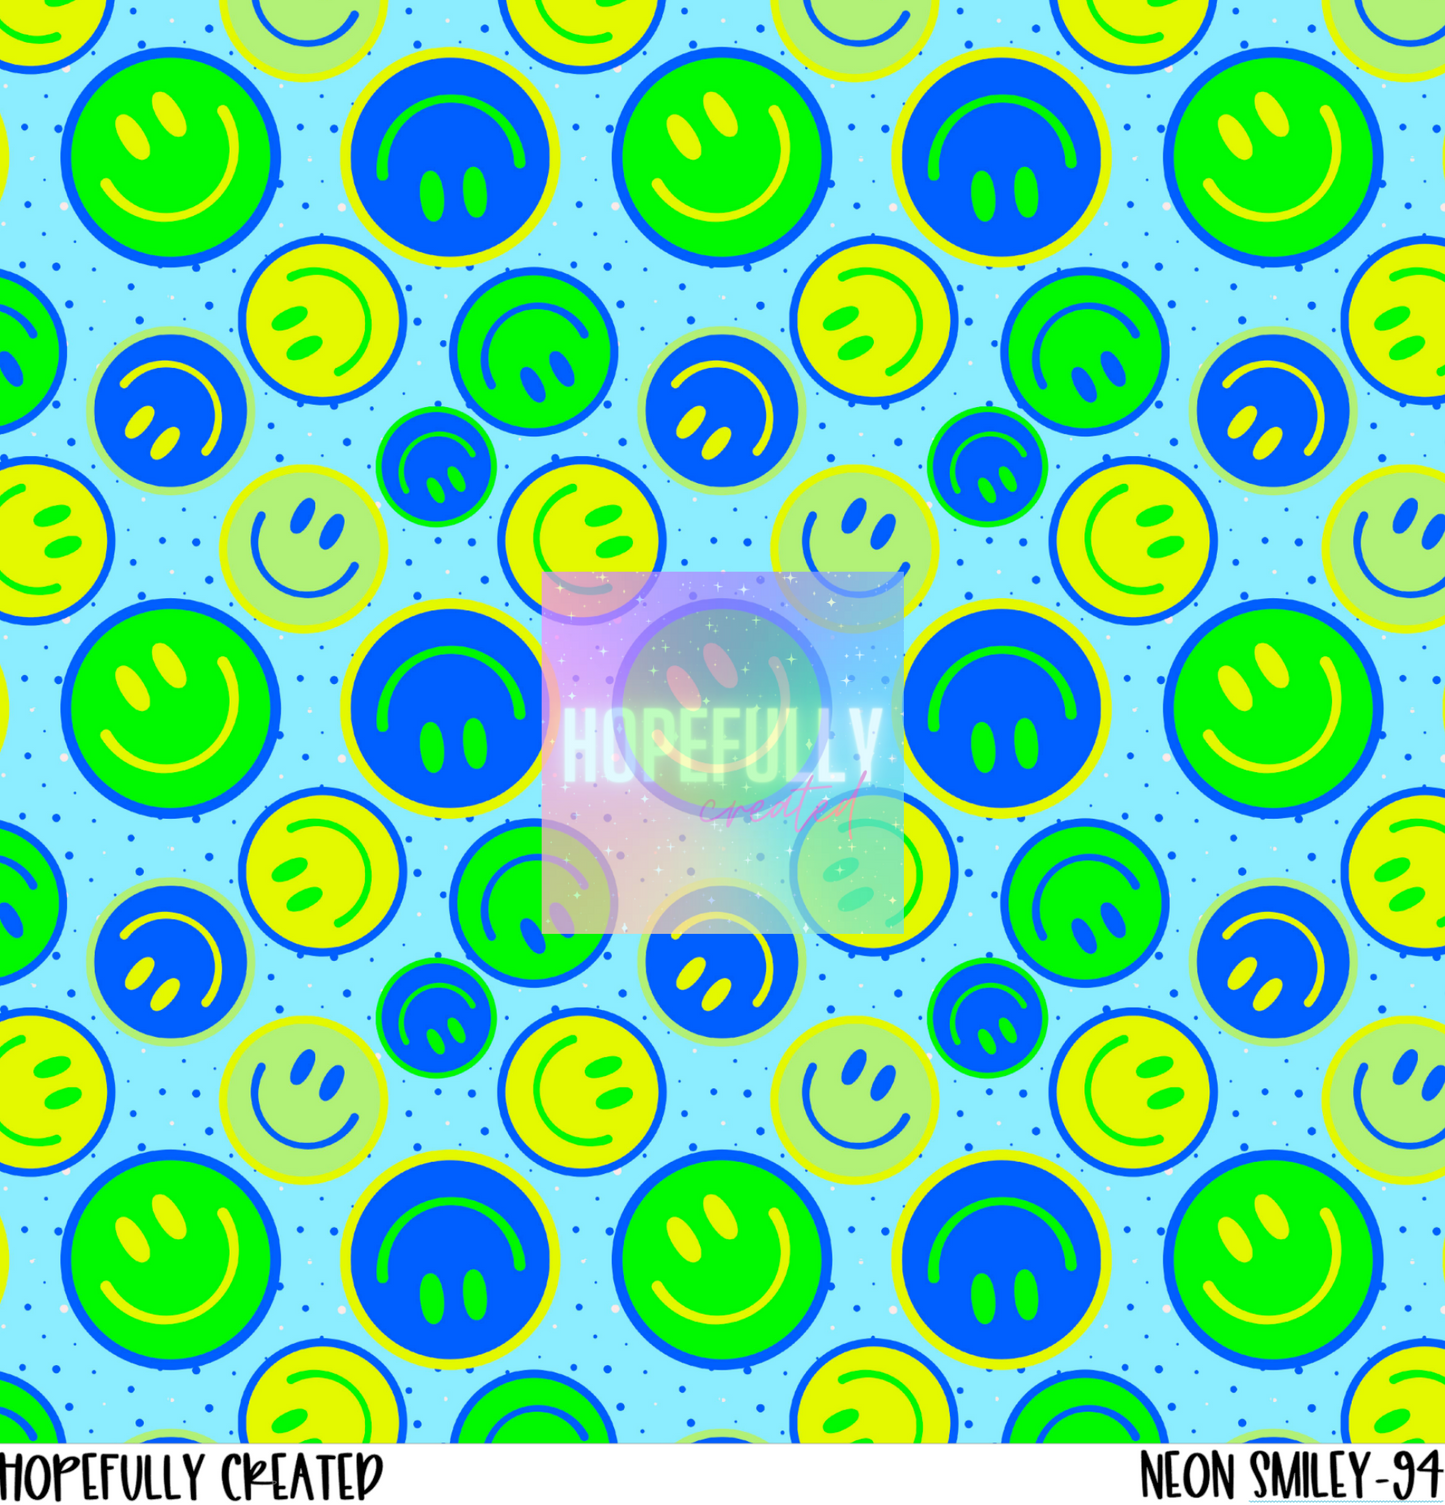 Neon Smiley 12x12 -94